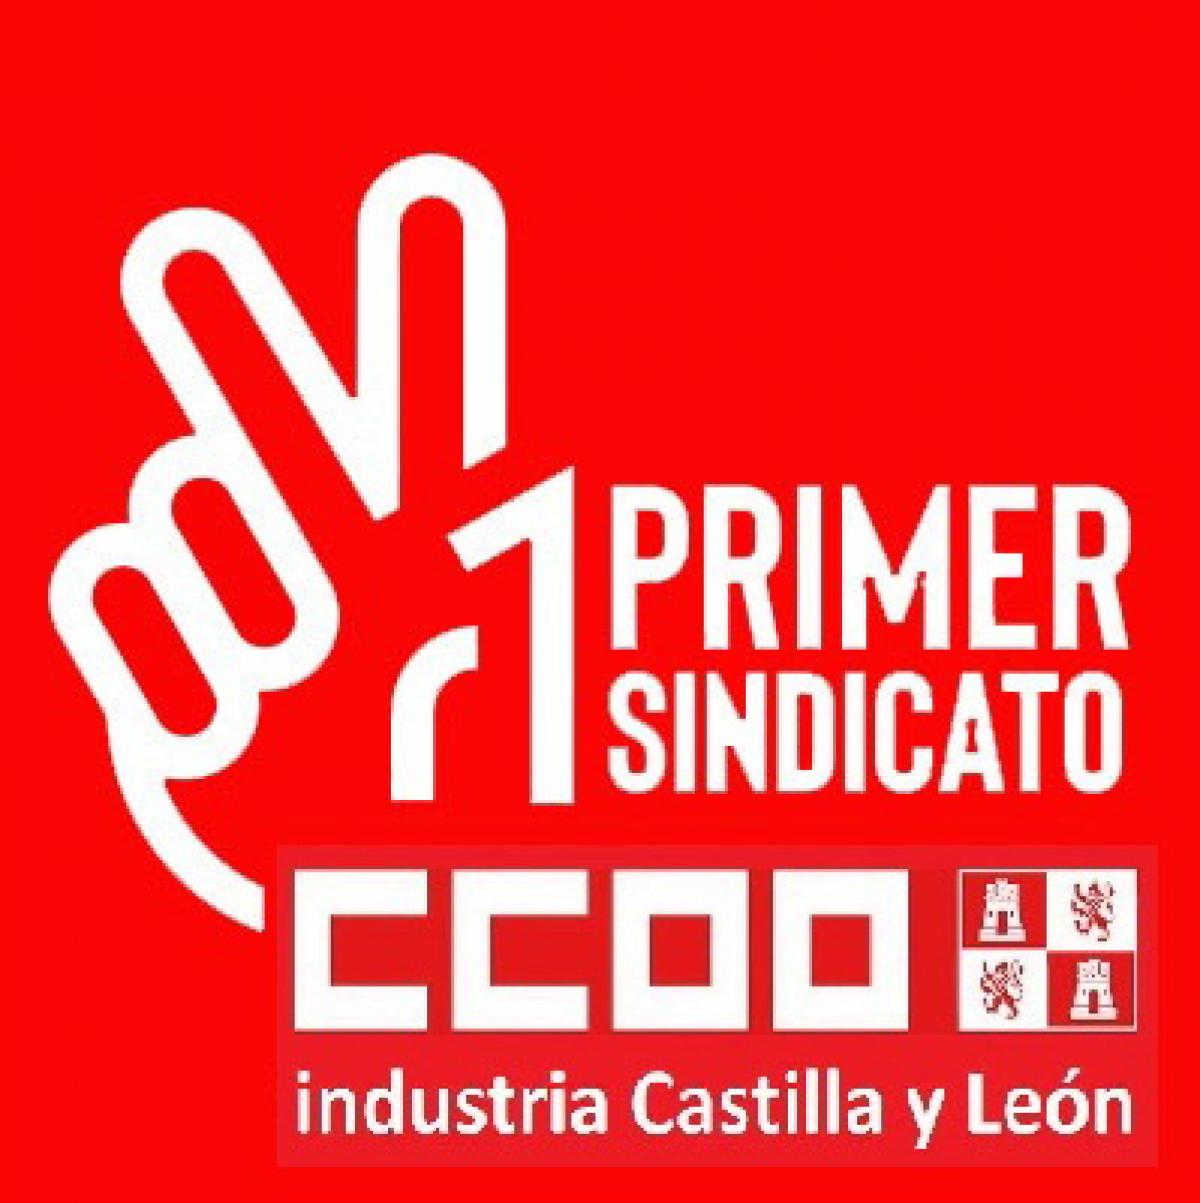 Vuelco Electoral de CCOO en la Harinera Villafranquina de Arévalo